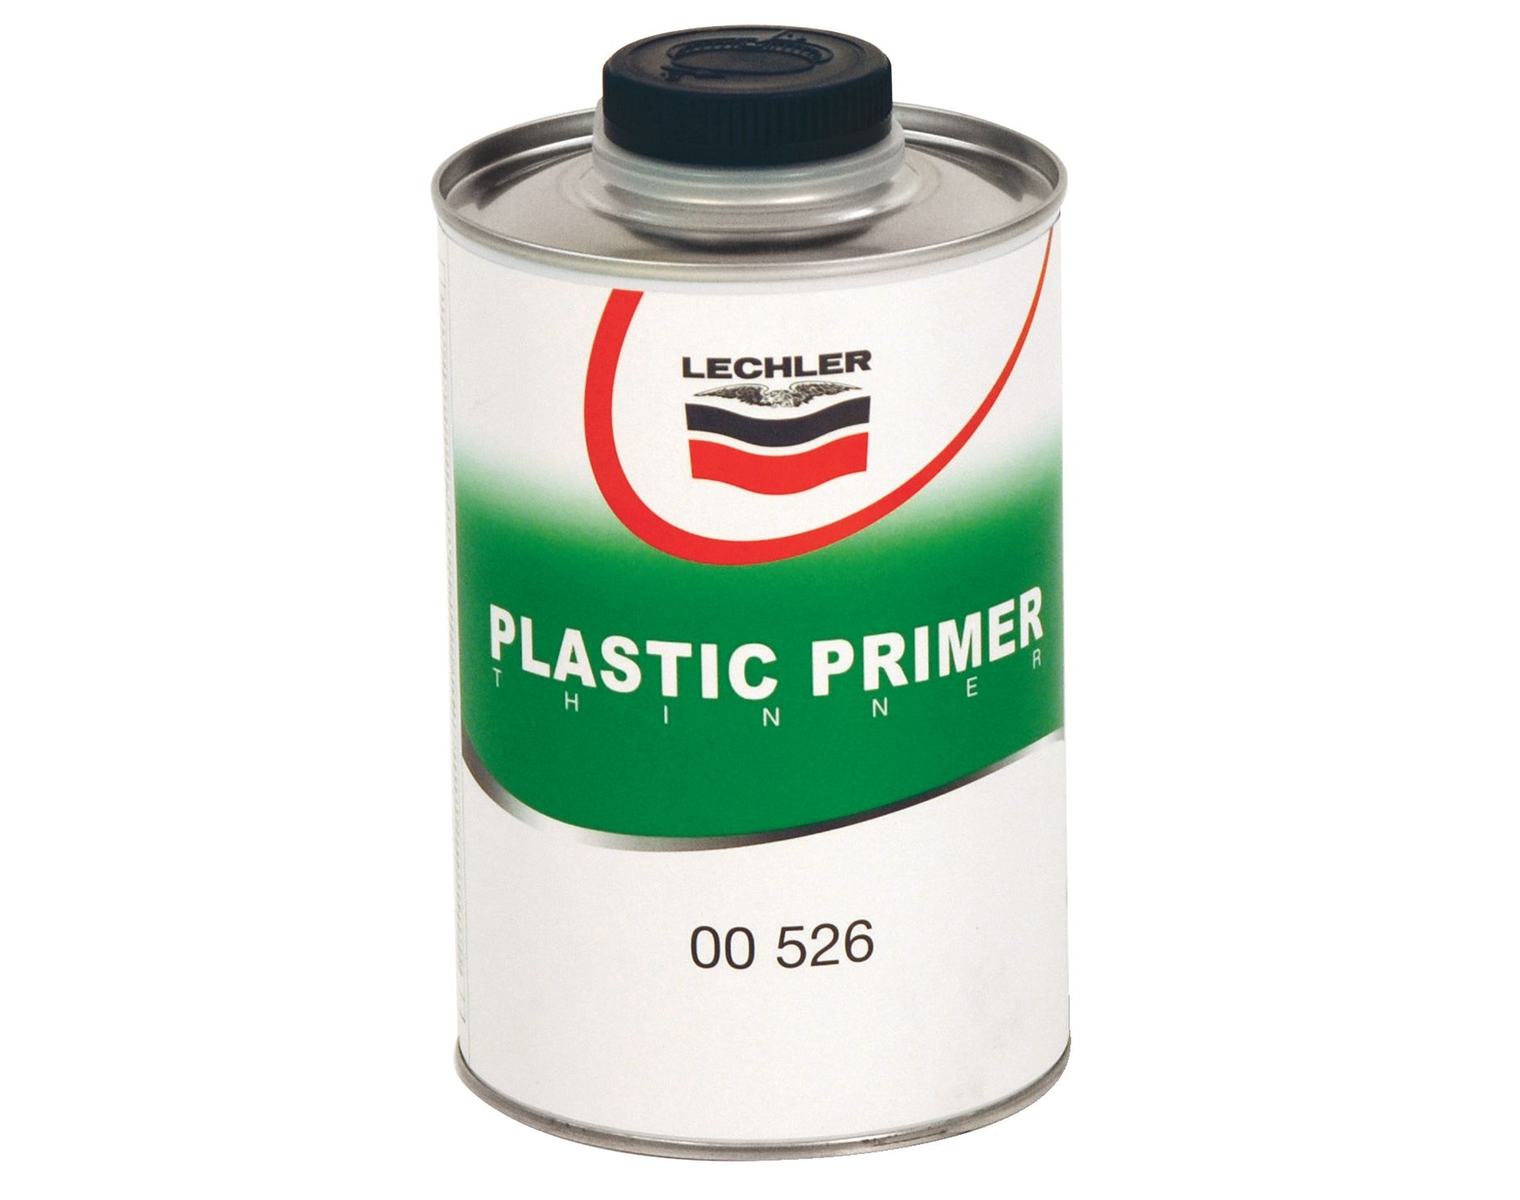 Lechler Verdünner Plastic Primer, 00526, 1 Liter